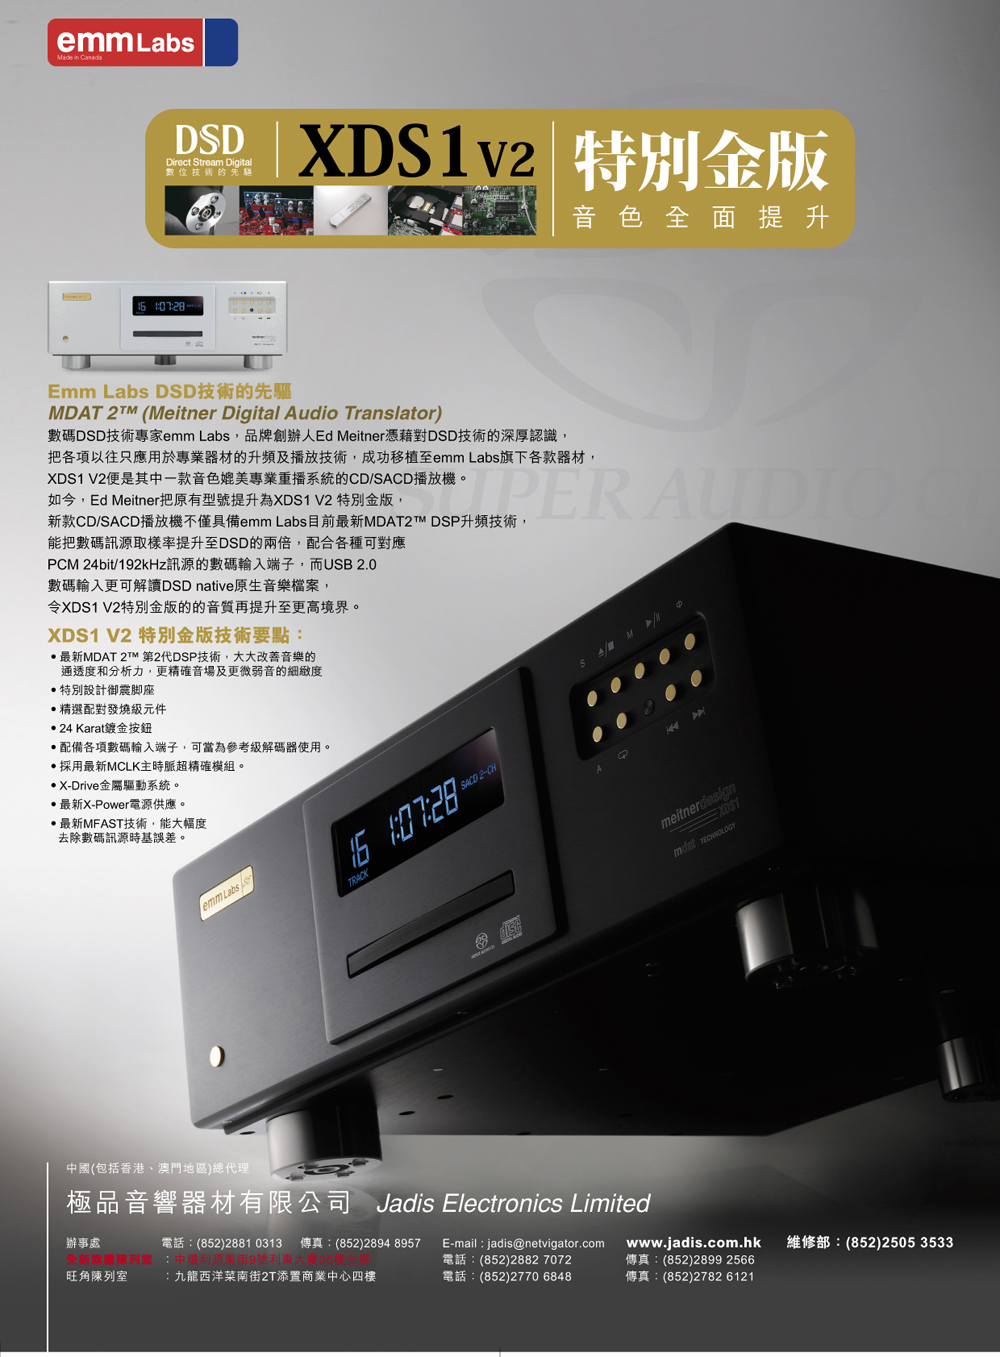 極品音響器材有限公司 - Jadis Electronics Limited